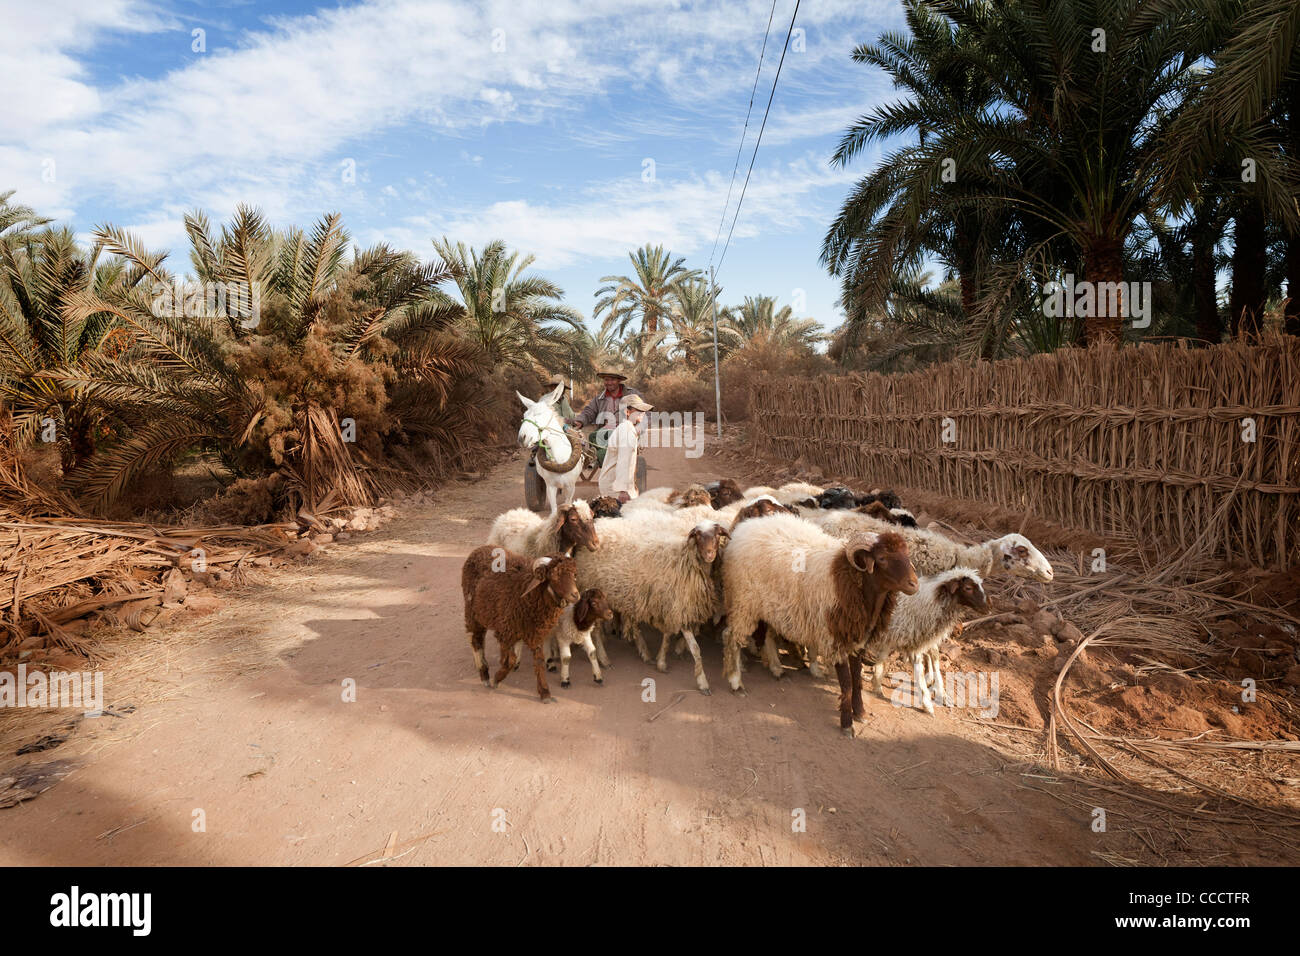 Mann auf Wagen, gezogen von Esel mit seiner Herde von Schafen und Ziegen in der Oase Dakhla, westliche Wüste Ägypten Stockfoto